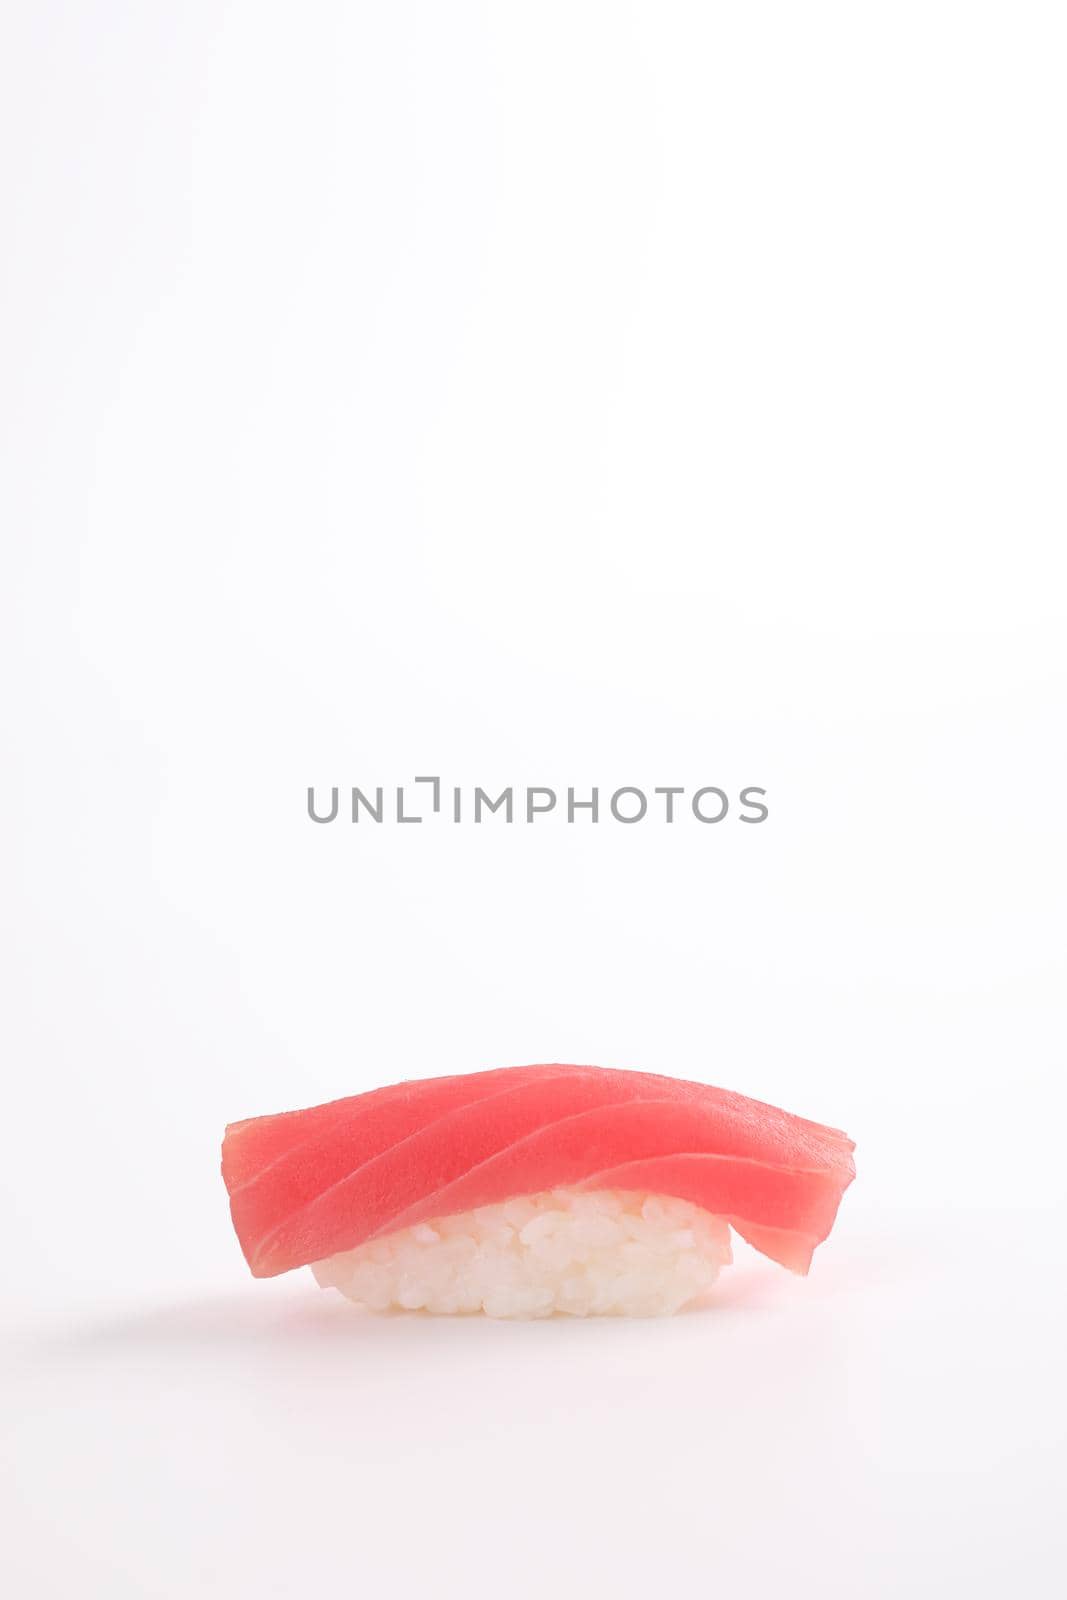 Tuna sushi , Japanese food isolated in white background